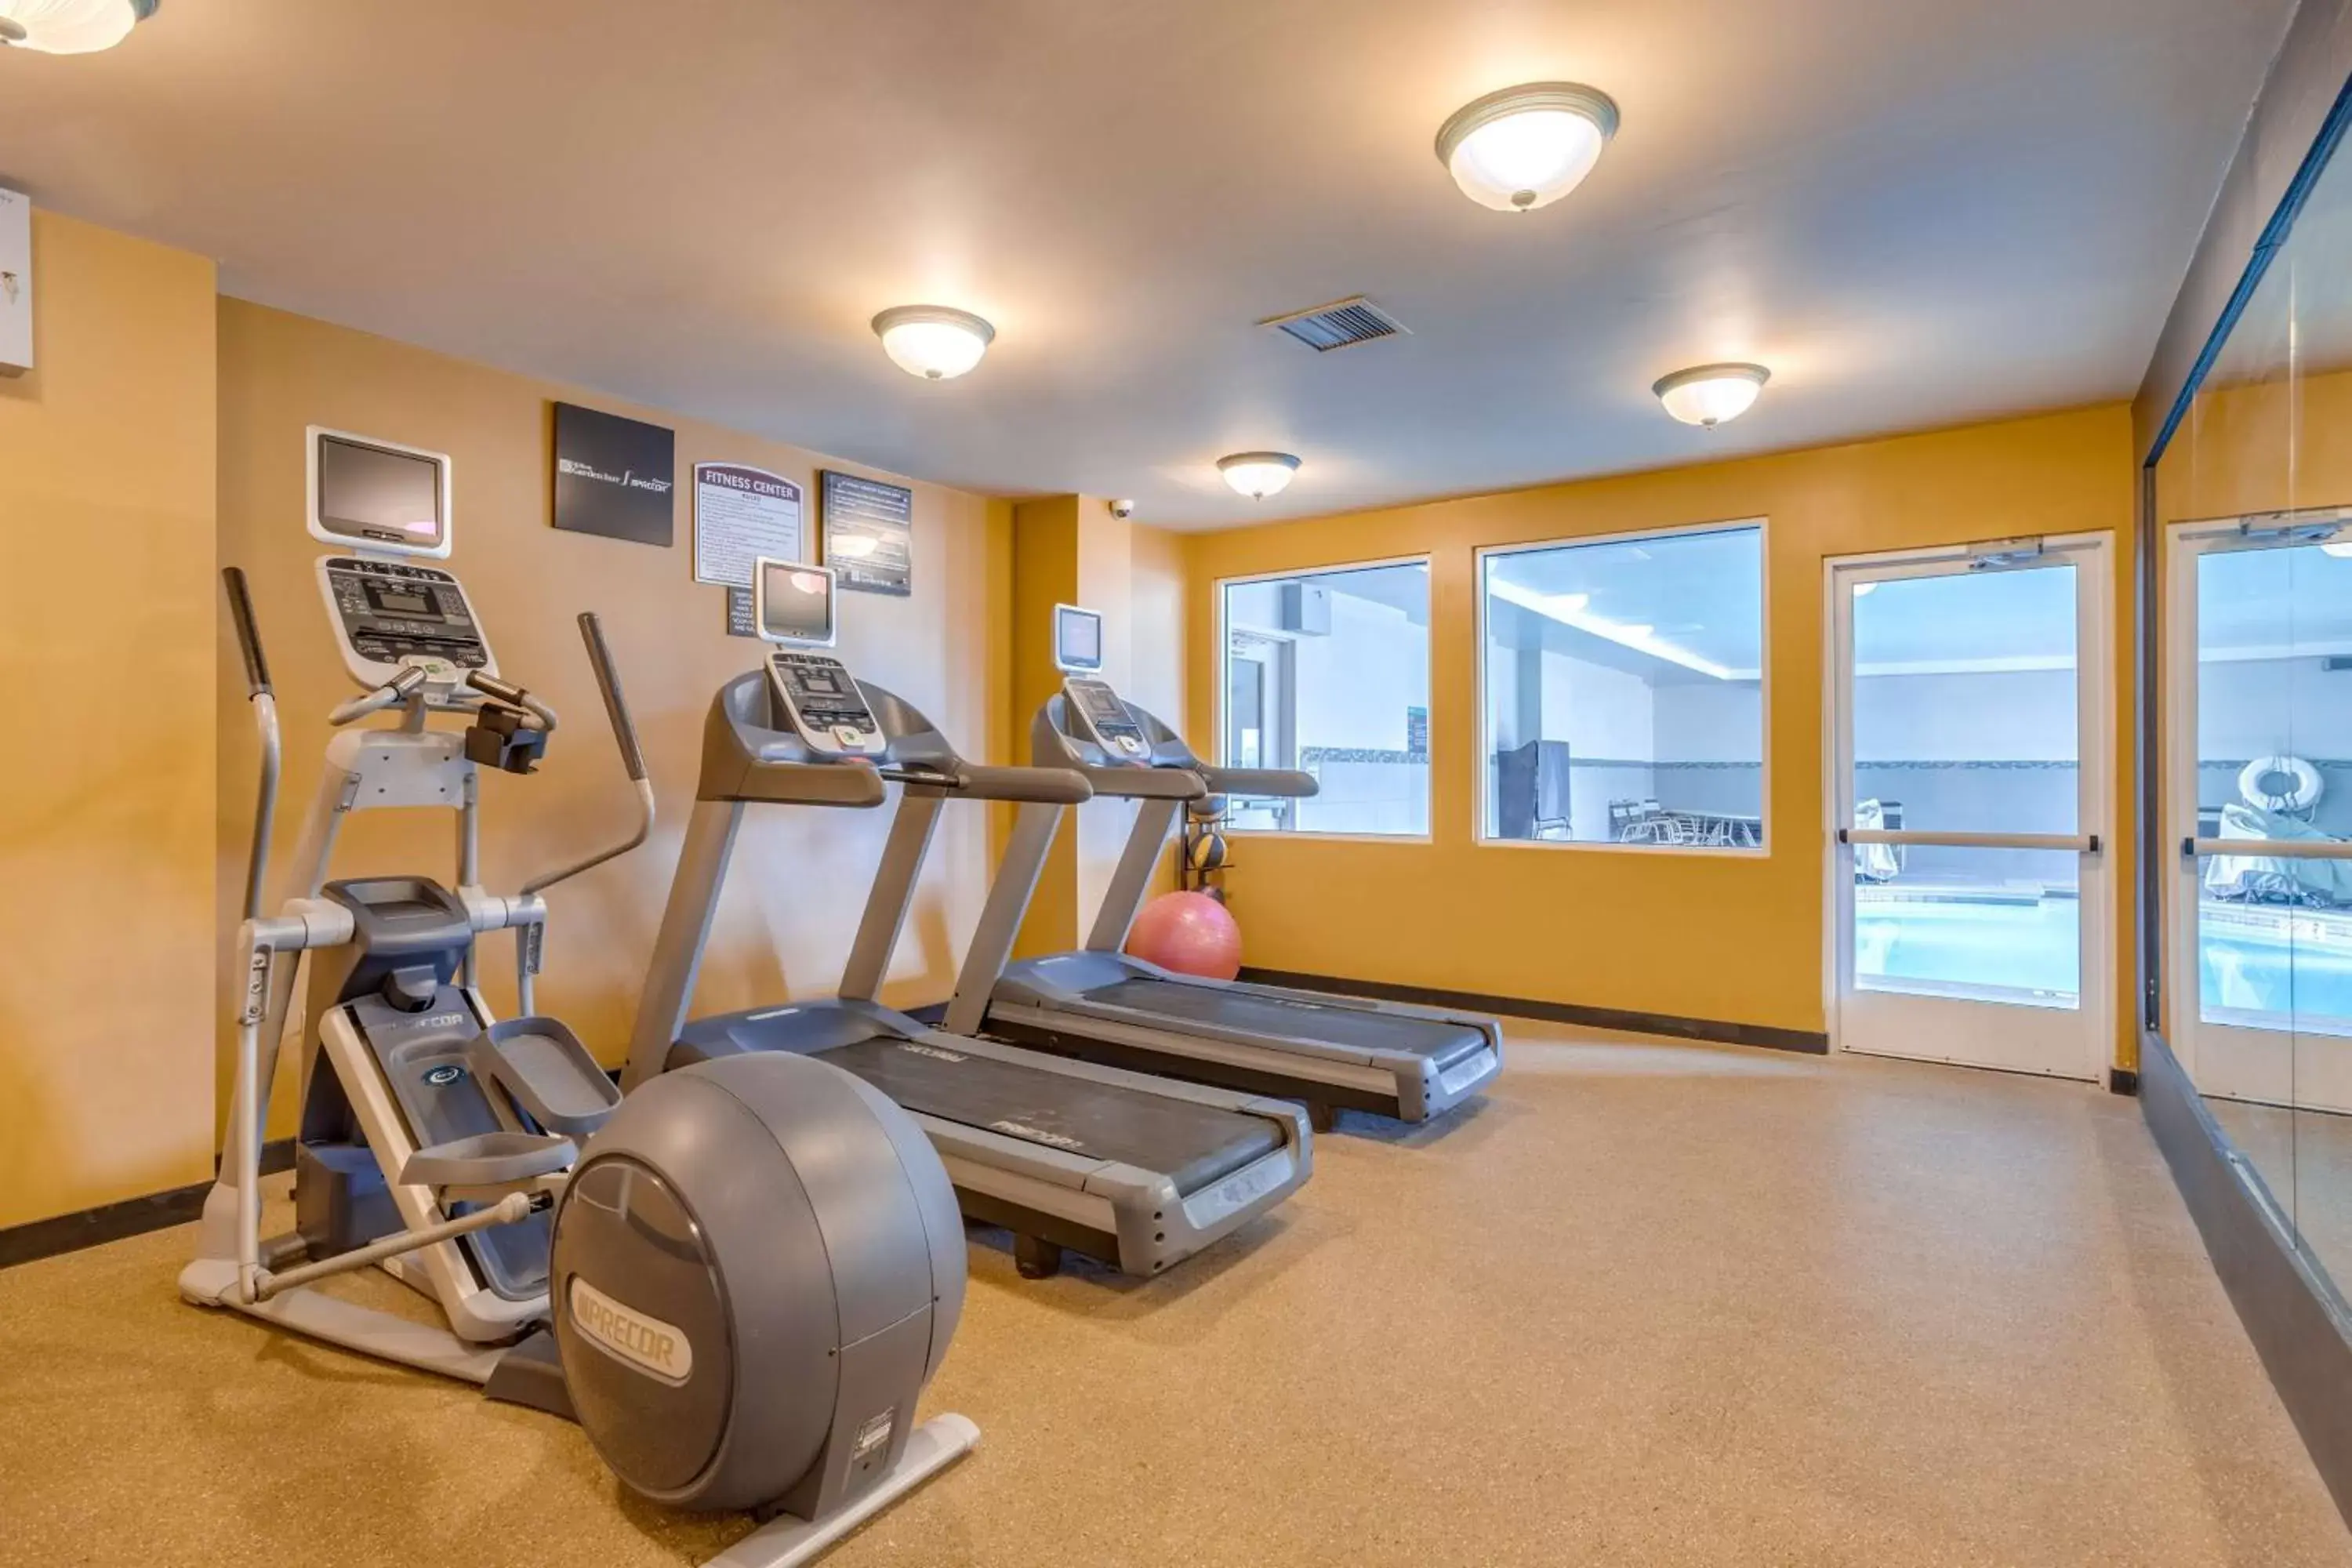 Fitness centre/facilities, Fitness Center/Facilities in Hilton Garden Inn Cincinnati/Sharonville